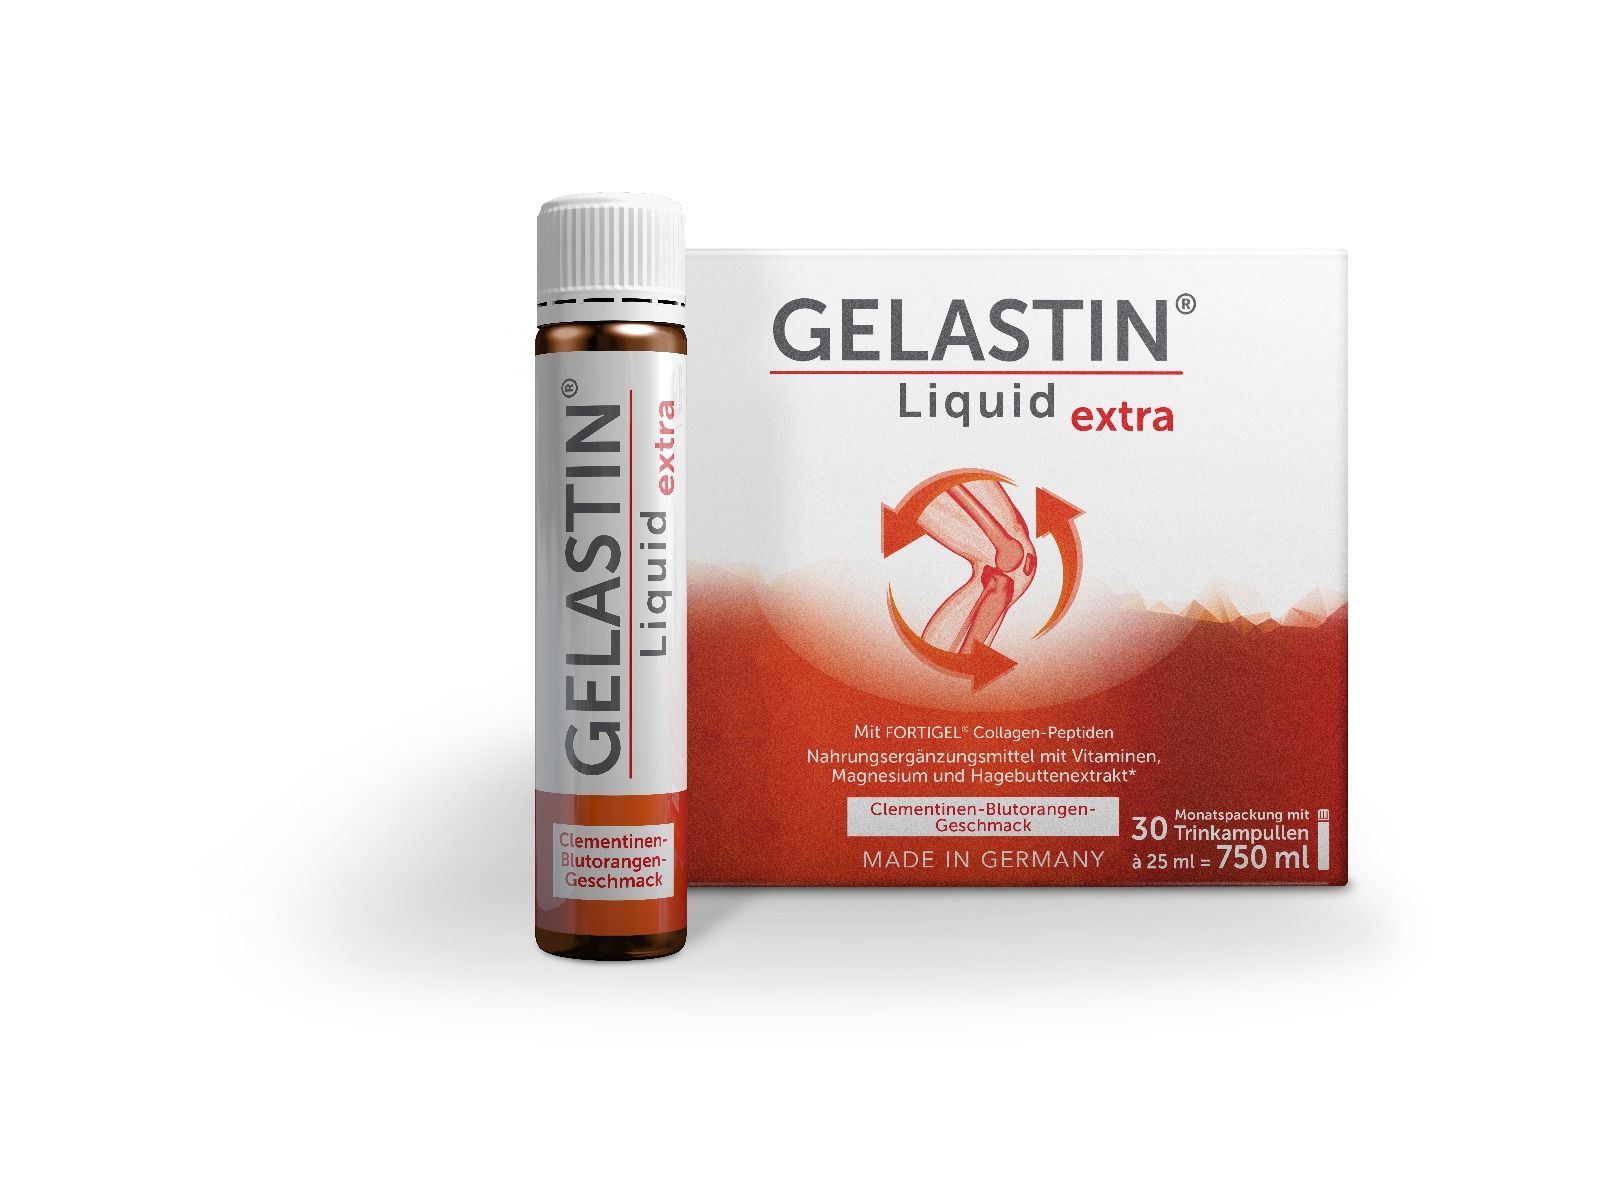 Gelastin Liquid extra